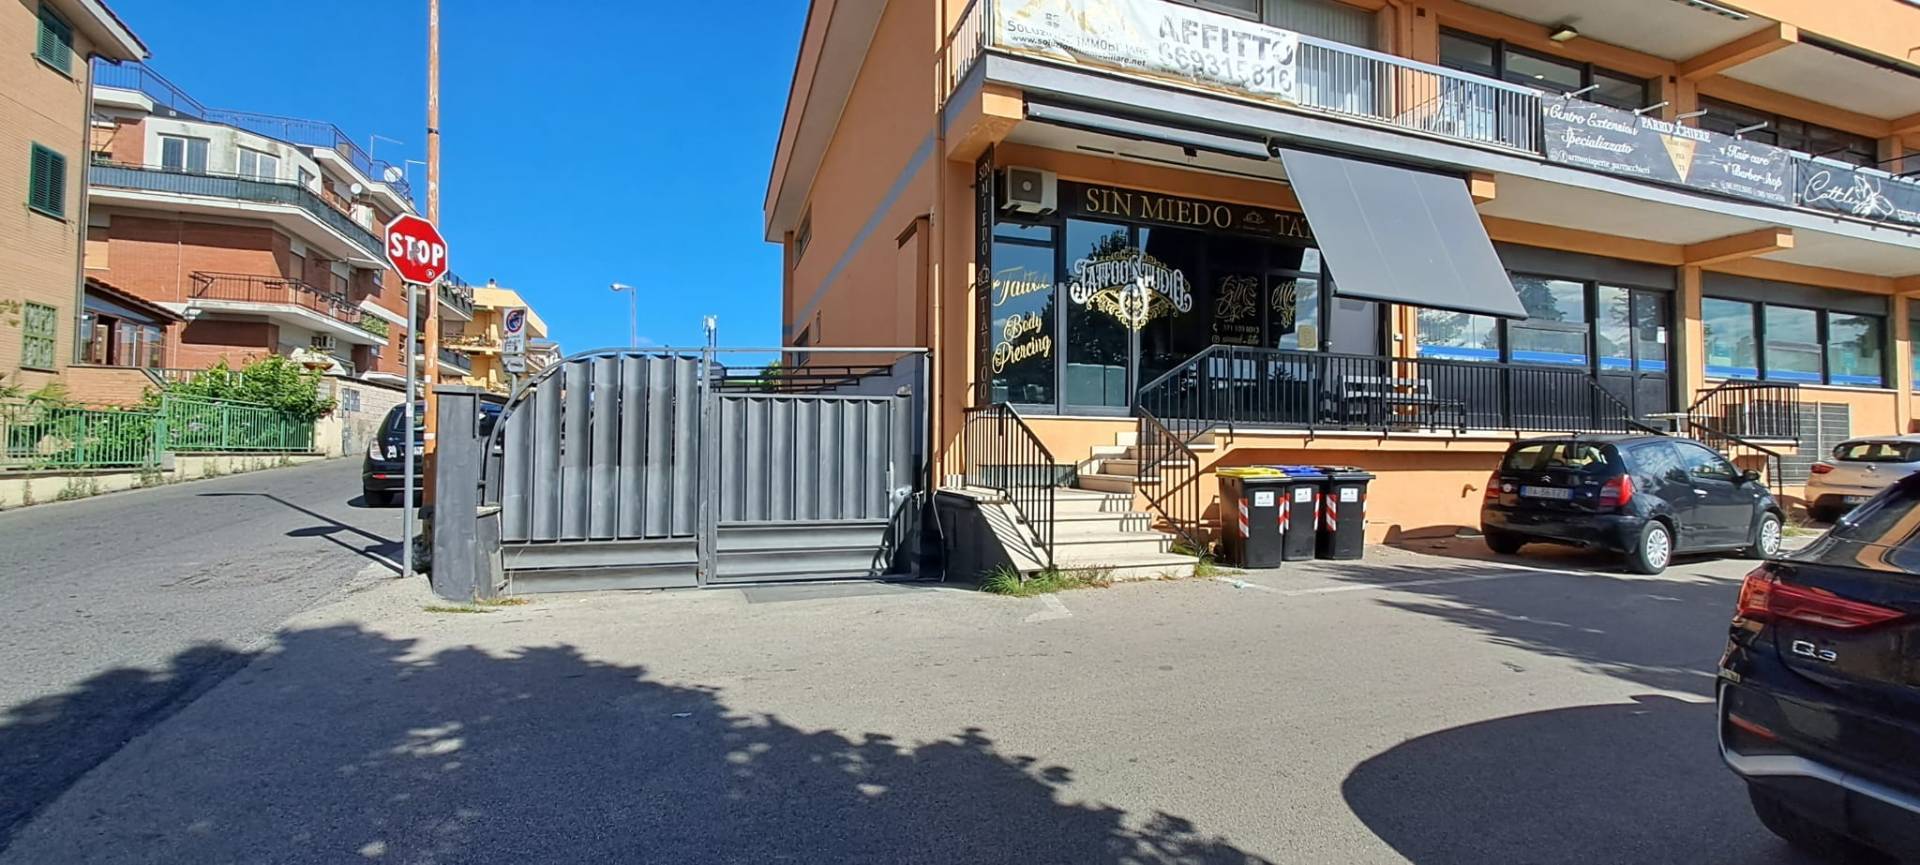 Fondo commerciale in affitto a Pavona, Albano Laziale (RM)